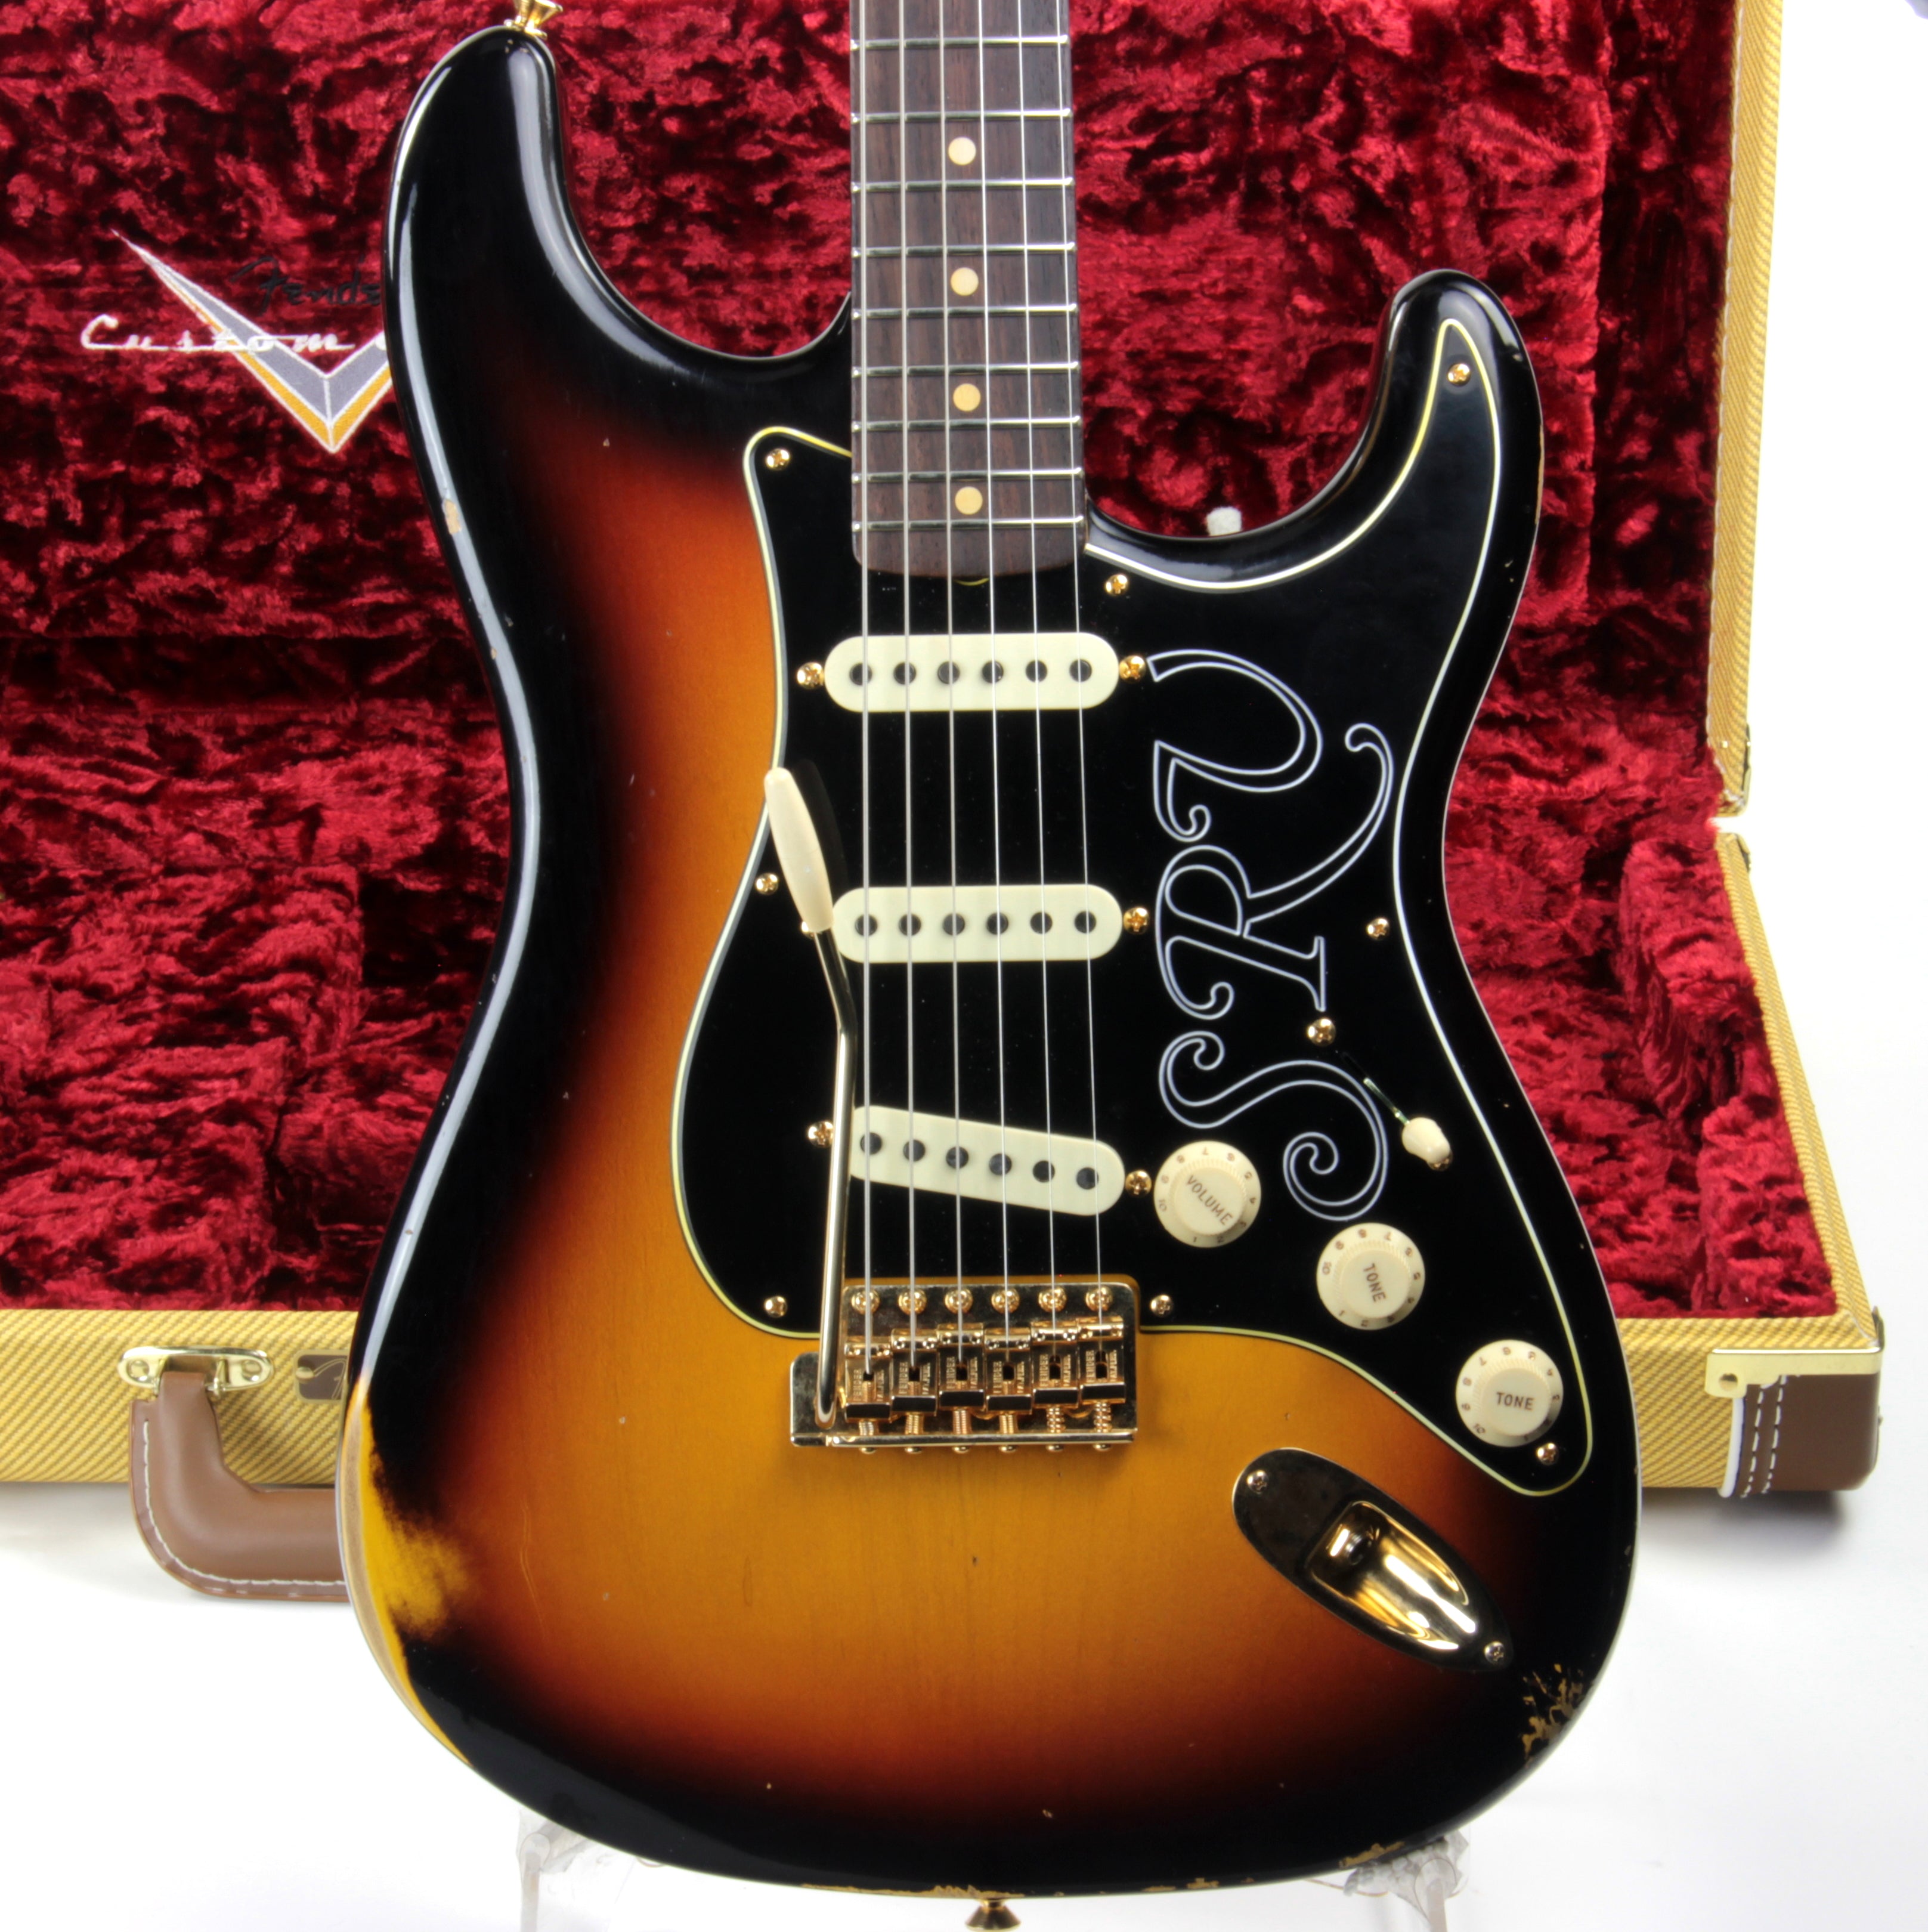 *SOLD*  2020 Fender Custom Shop Stevie Ray Vaughan Signature Relic Stratocaster SRV Sunburst Strat